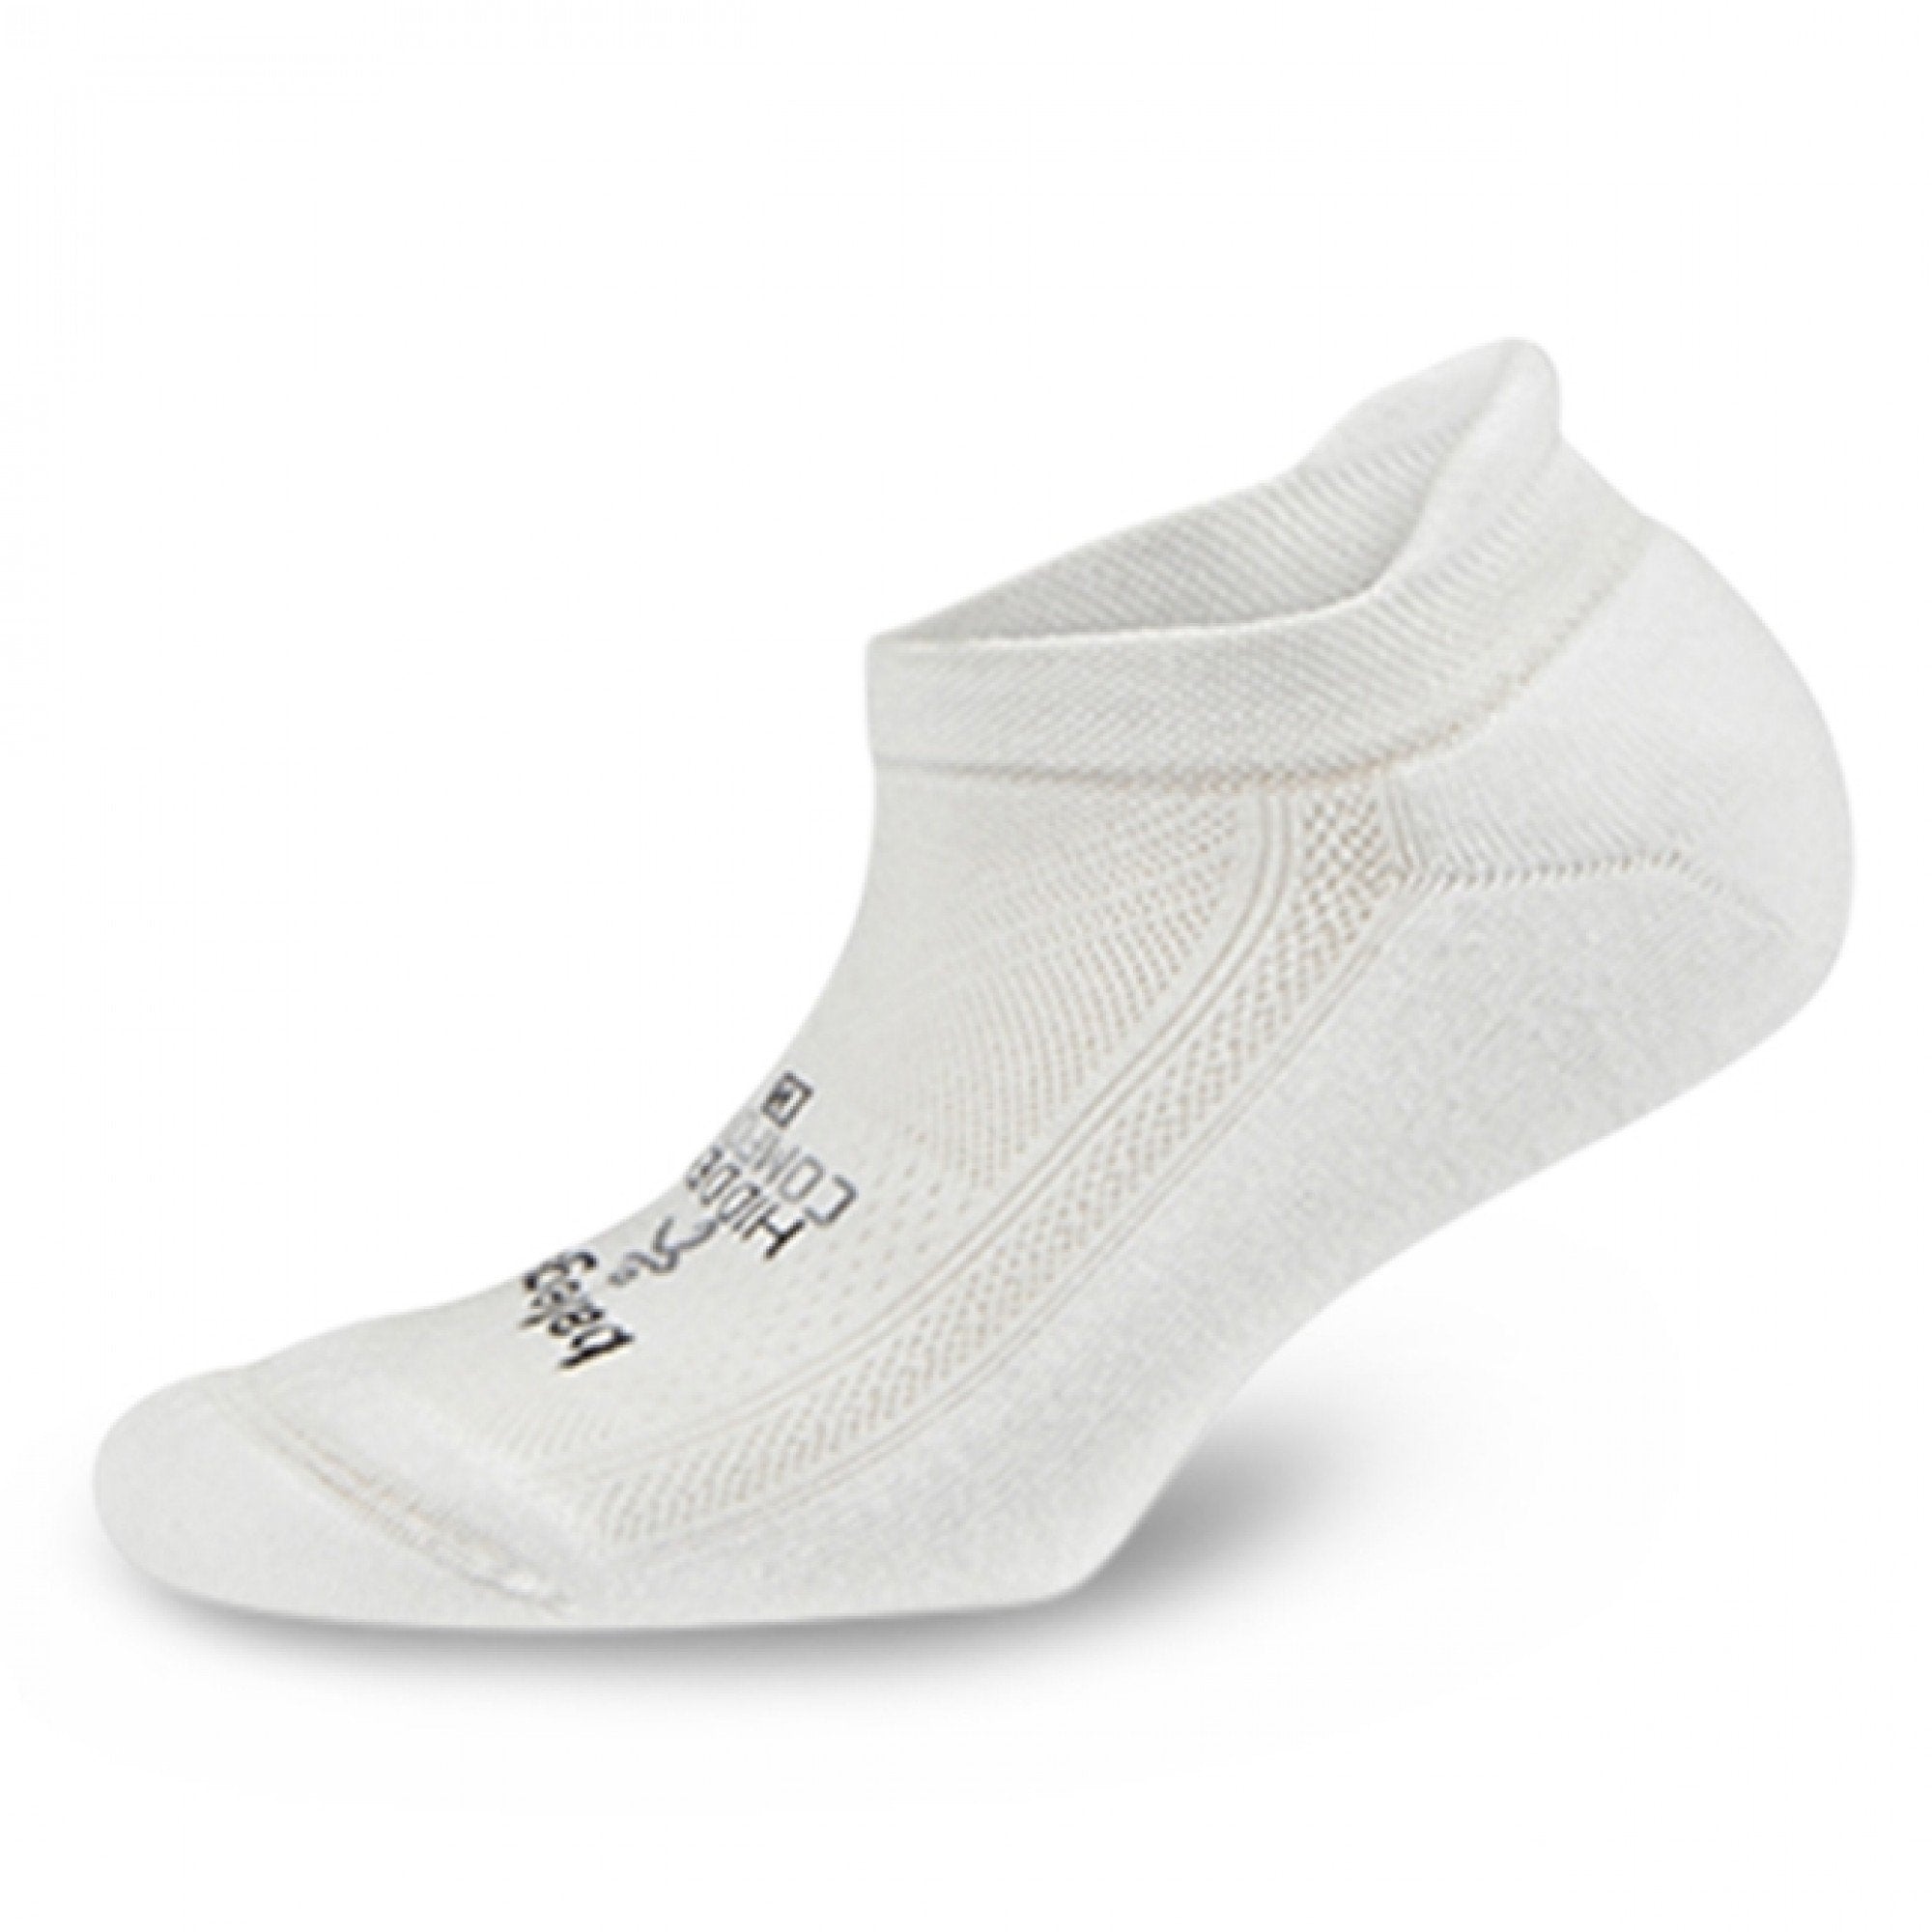 Balega Hidden Comfort Socks GEAR - Socks White